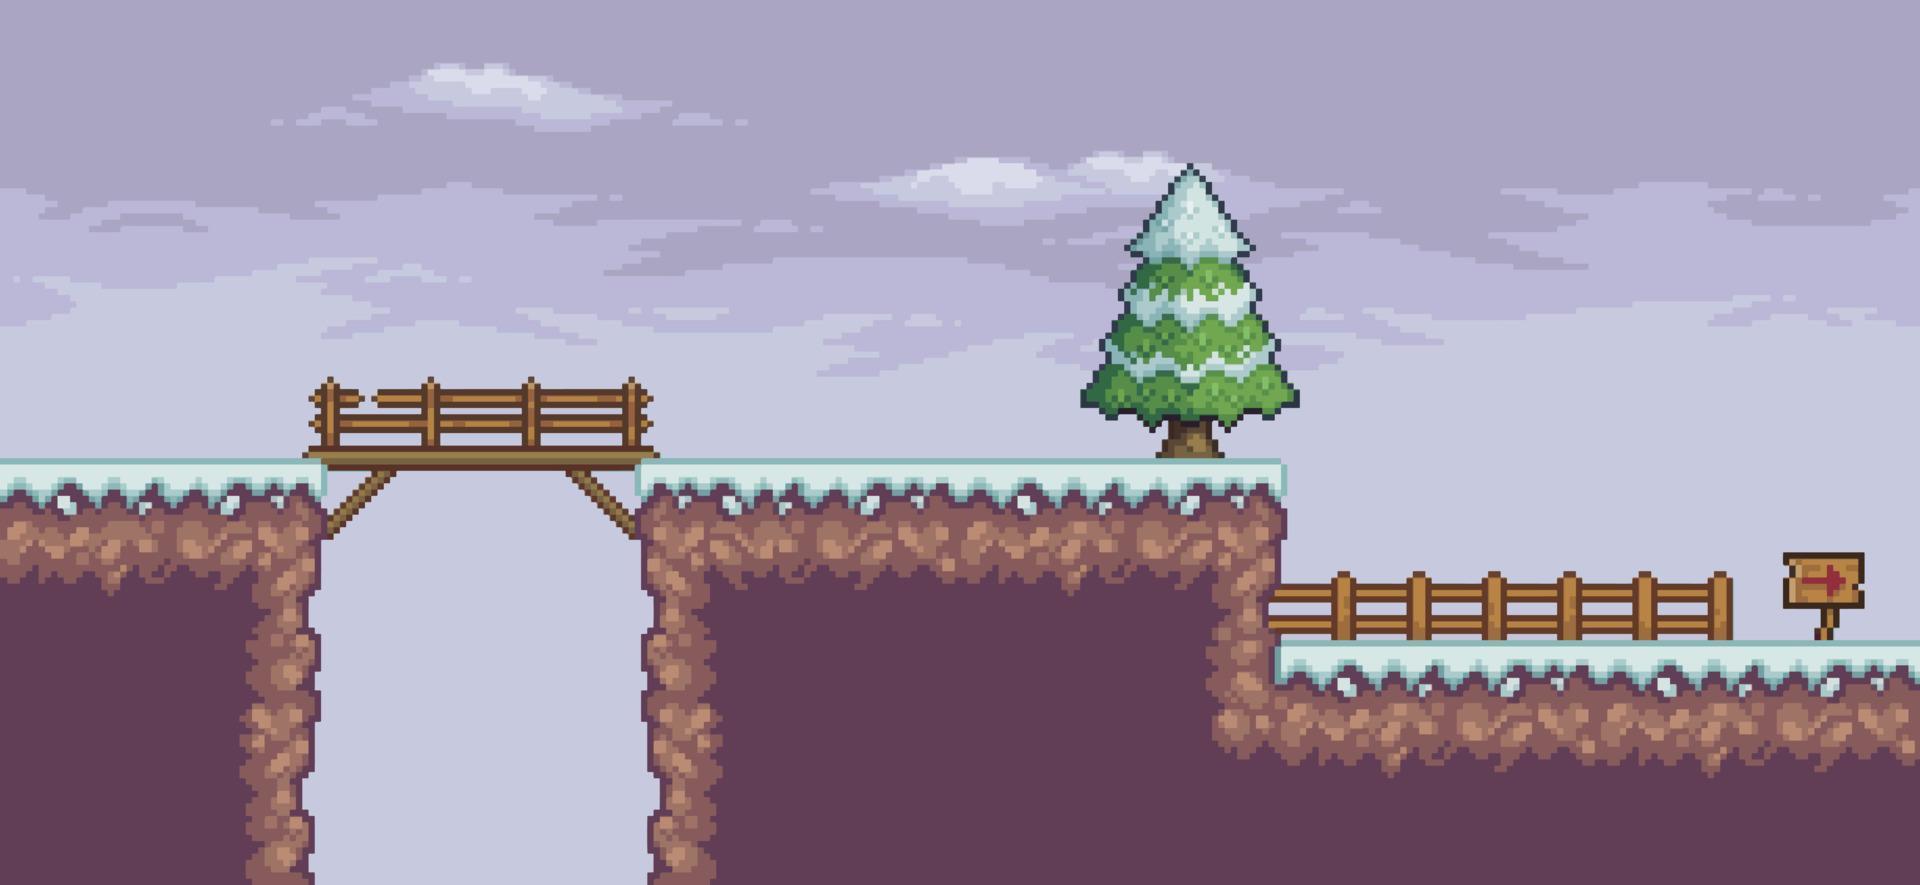 pixel art spelscen i snö med tallar, bro, staket, moln och 8bit bakgrund vektor